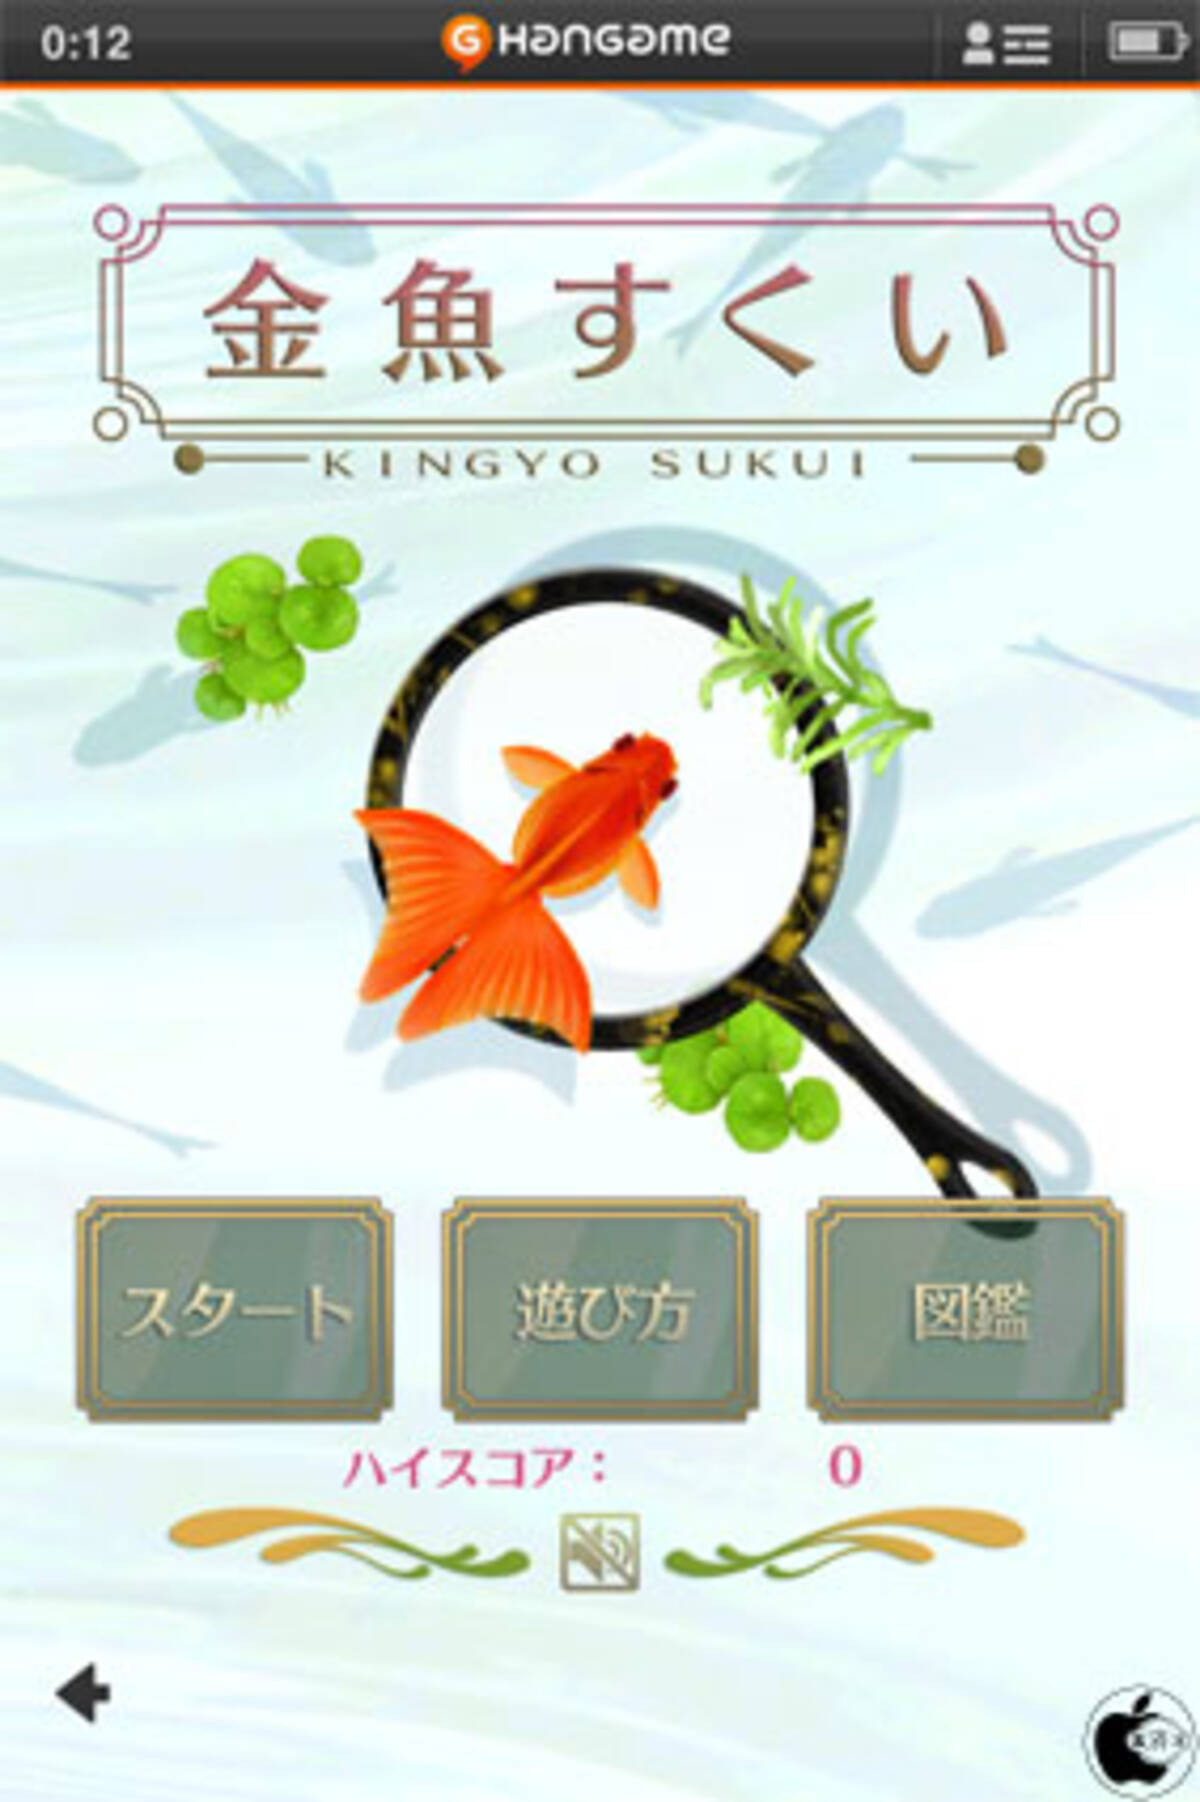 金魚すくいゲームアプリ 金魚すくい By Hangame を試す 12年5月2日 エキサイトニュース